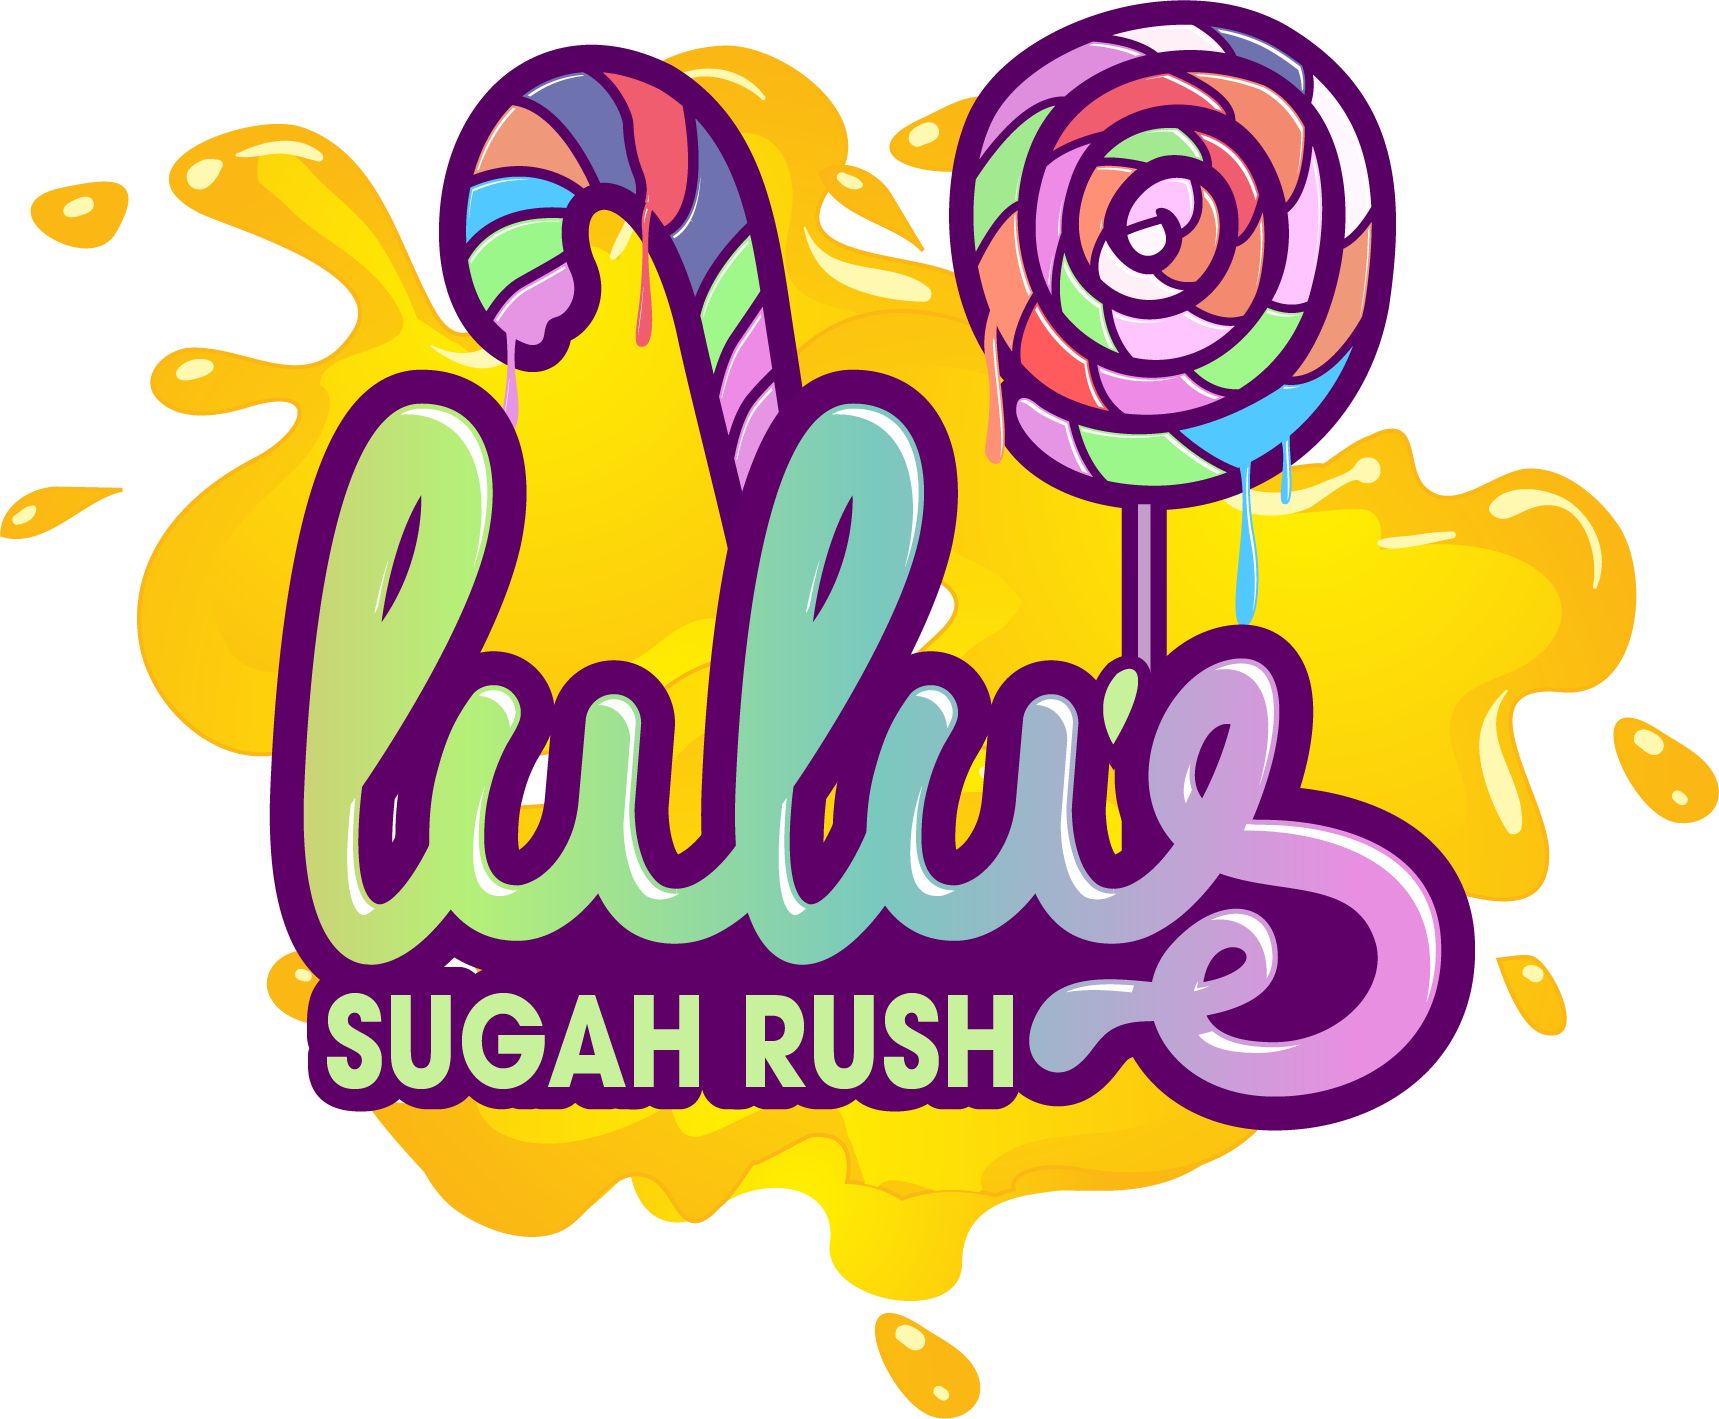 LuLu's Sugah Rush